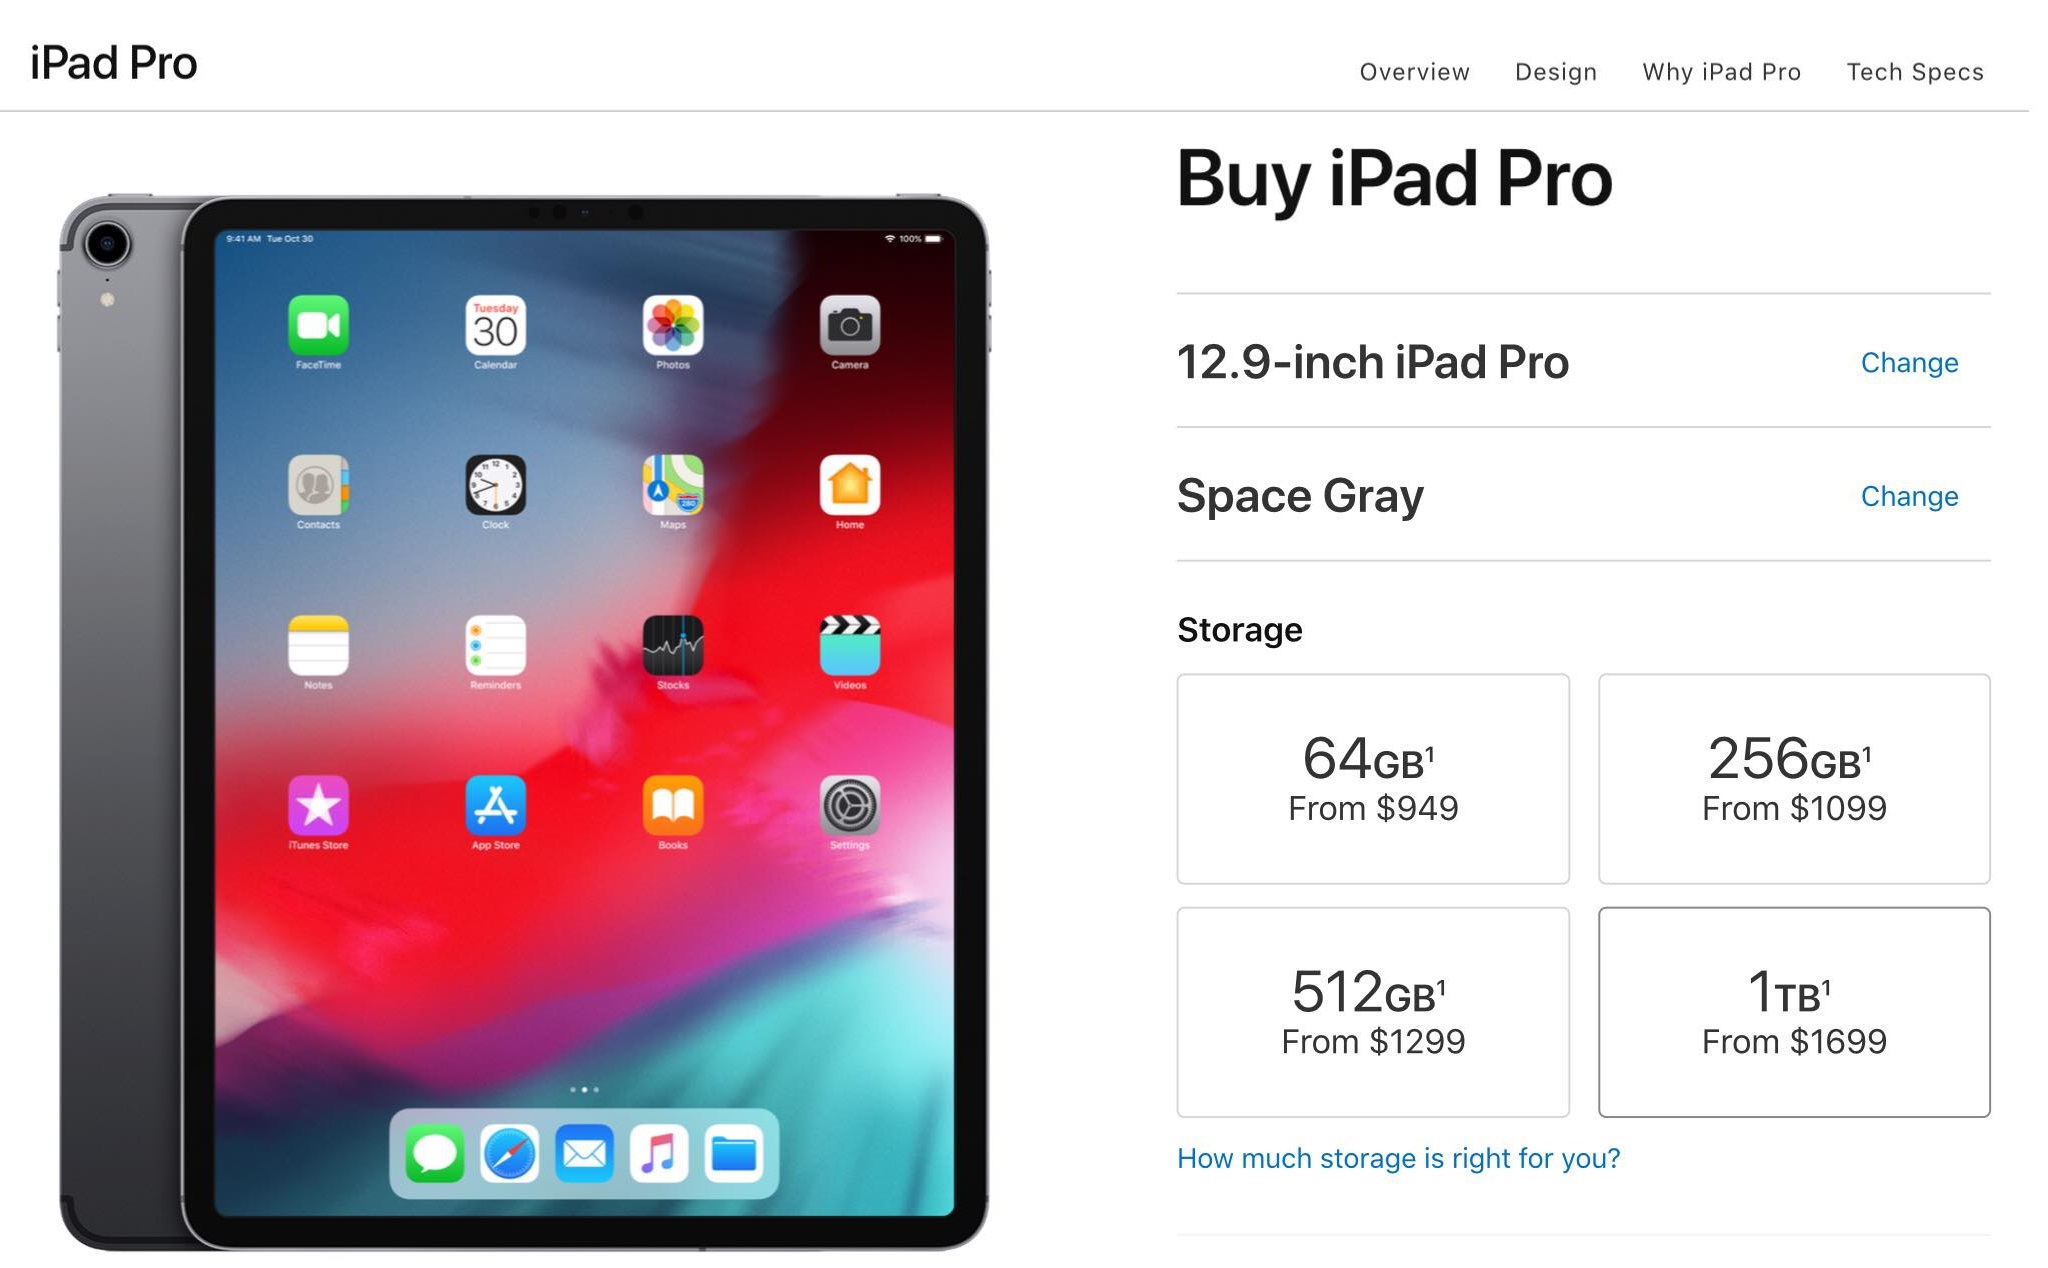 [Chuyện lạ] Vô web đặt mua iPad Pro 2018 bằng iPad thì giá rẻ hơn 50$, Pencil rẻ hơn 10$